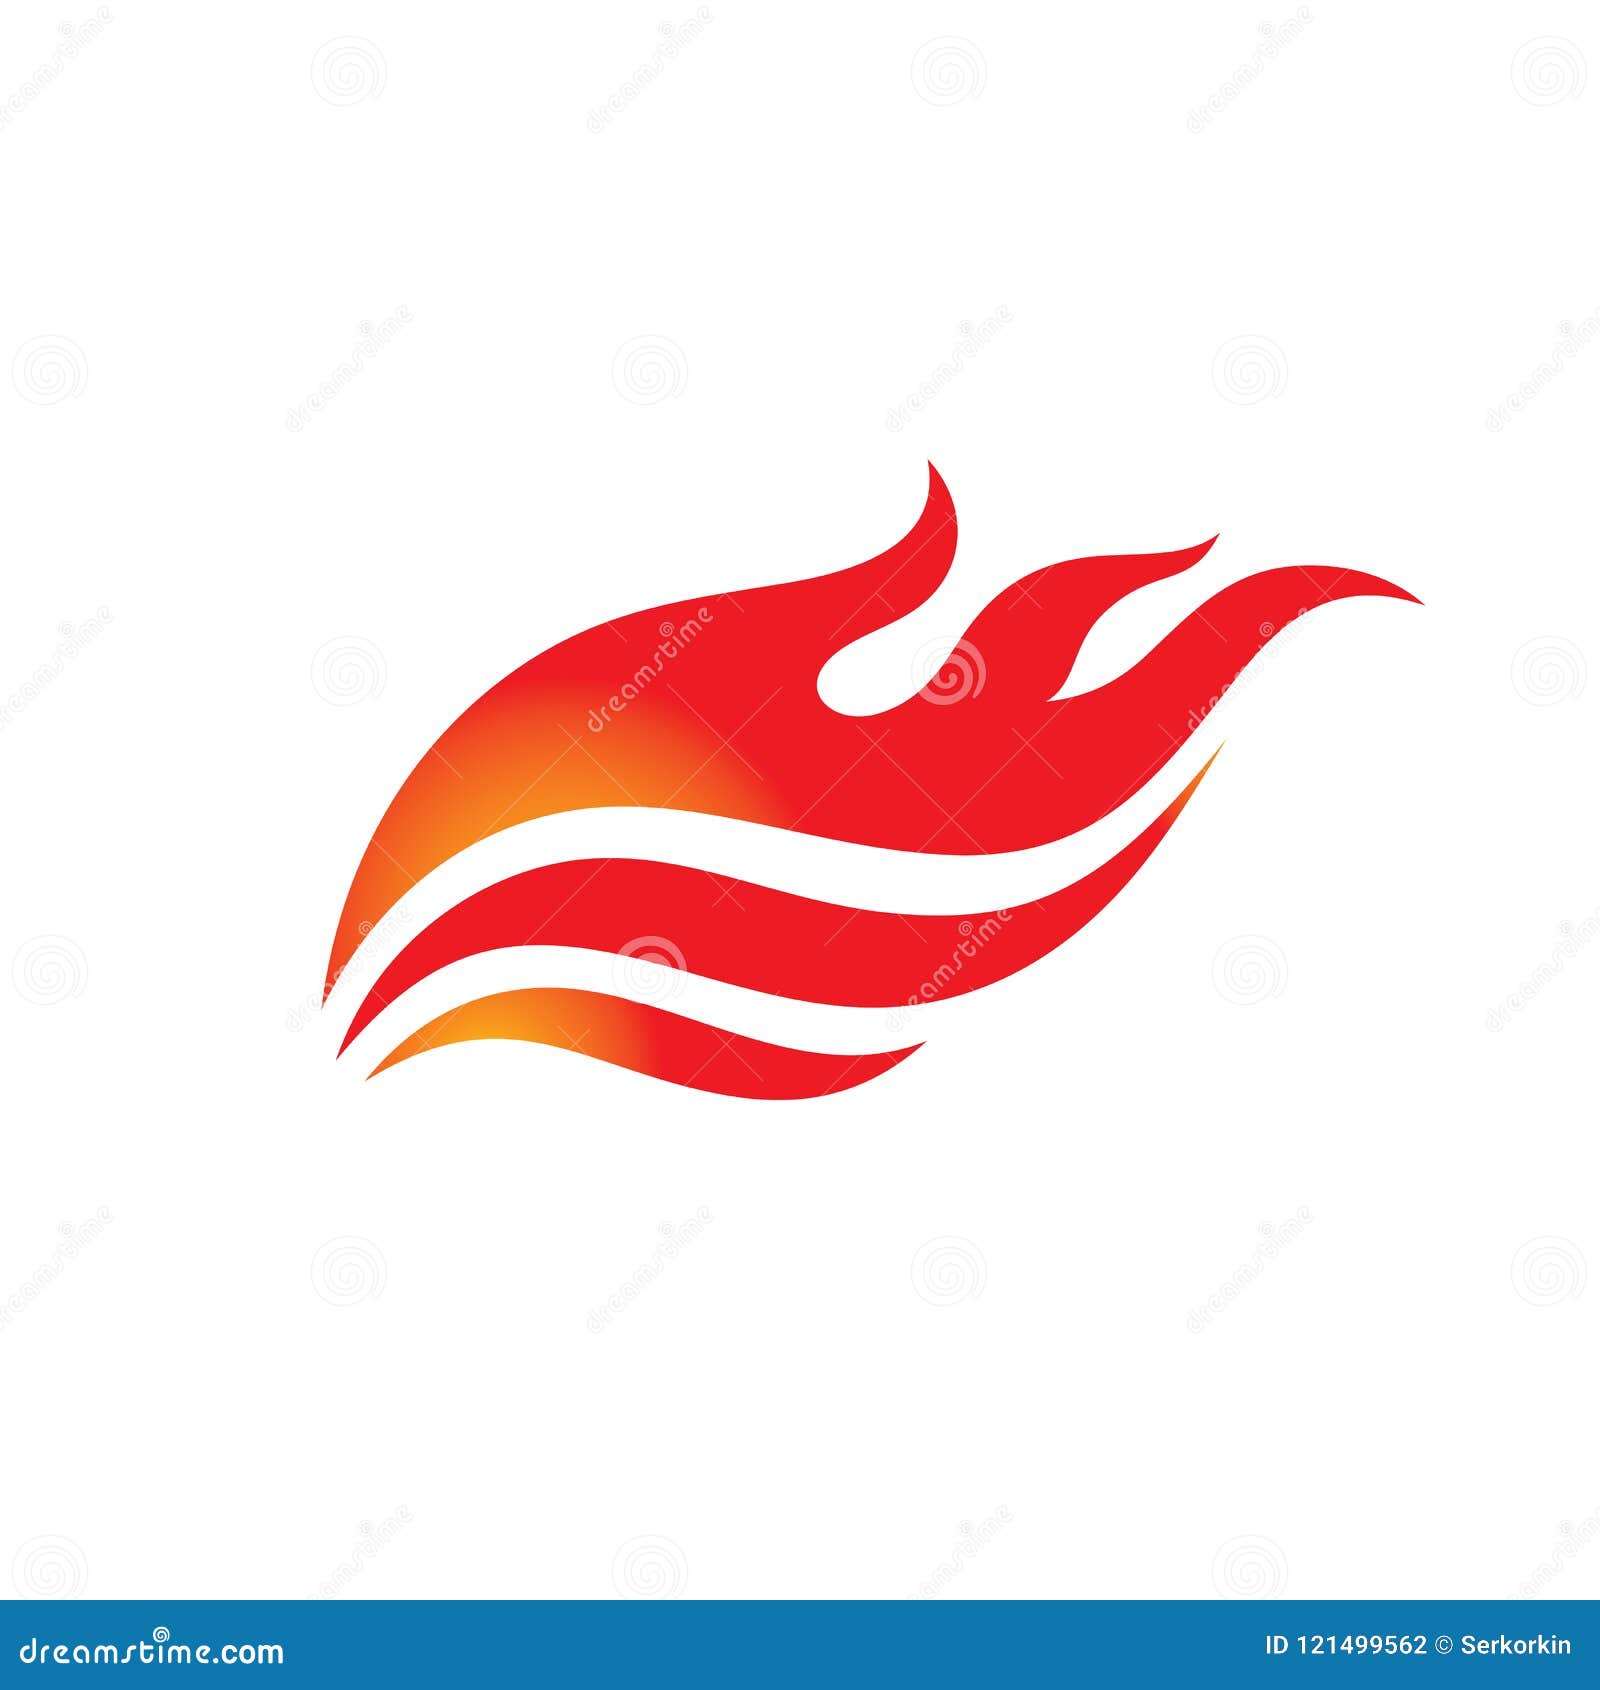 Flame - ilustração do conceito de logotipo vetorial. Sinal de fogo